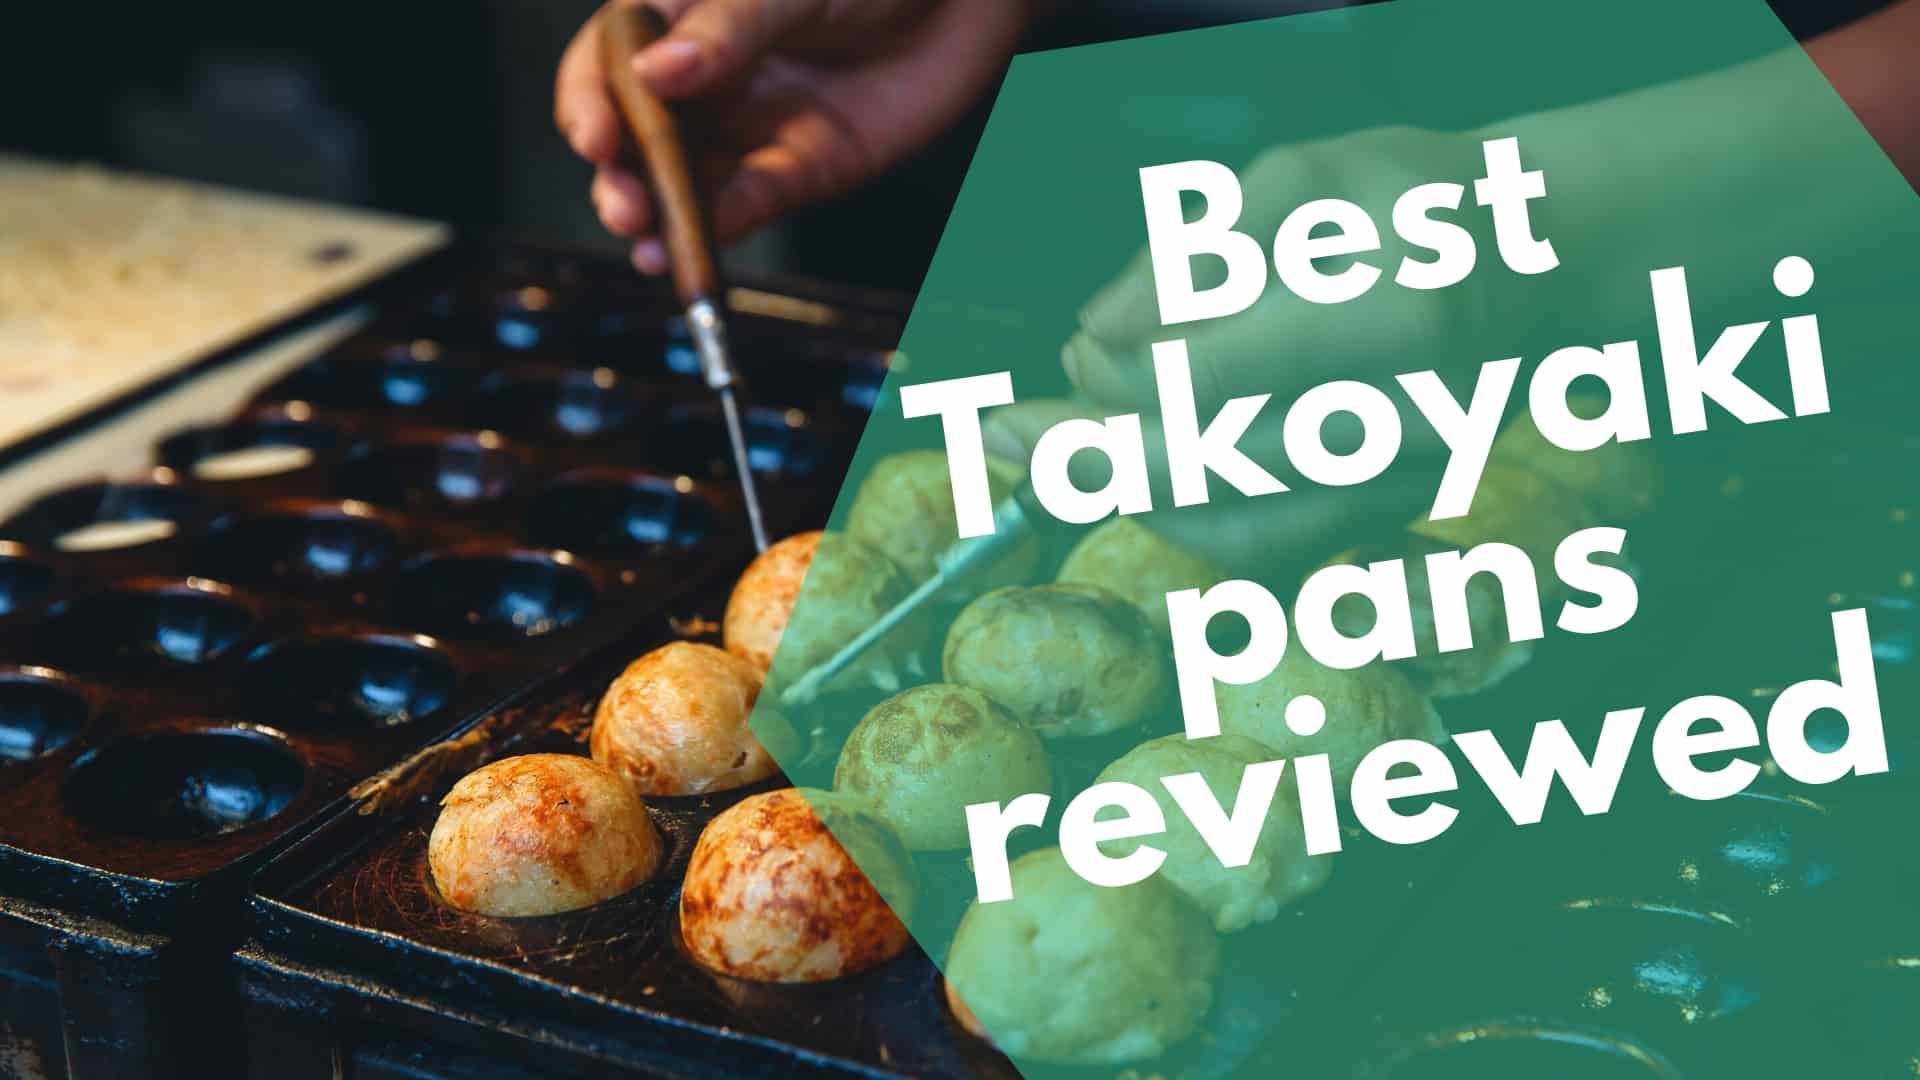 Pregledano je 7 najboljših litoželeznih takoyaki ponev in električnih aparatov